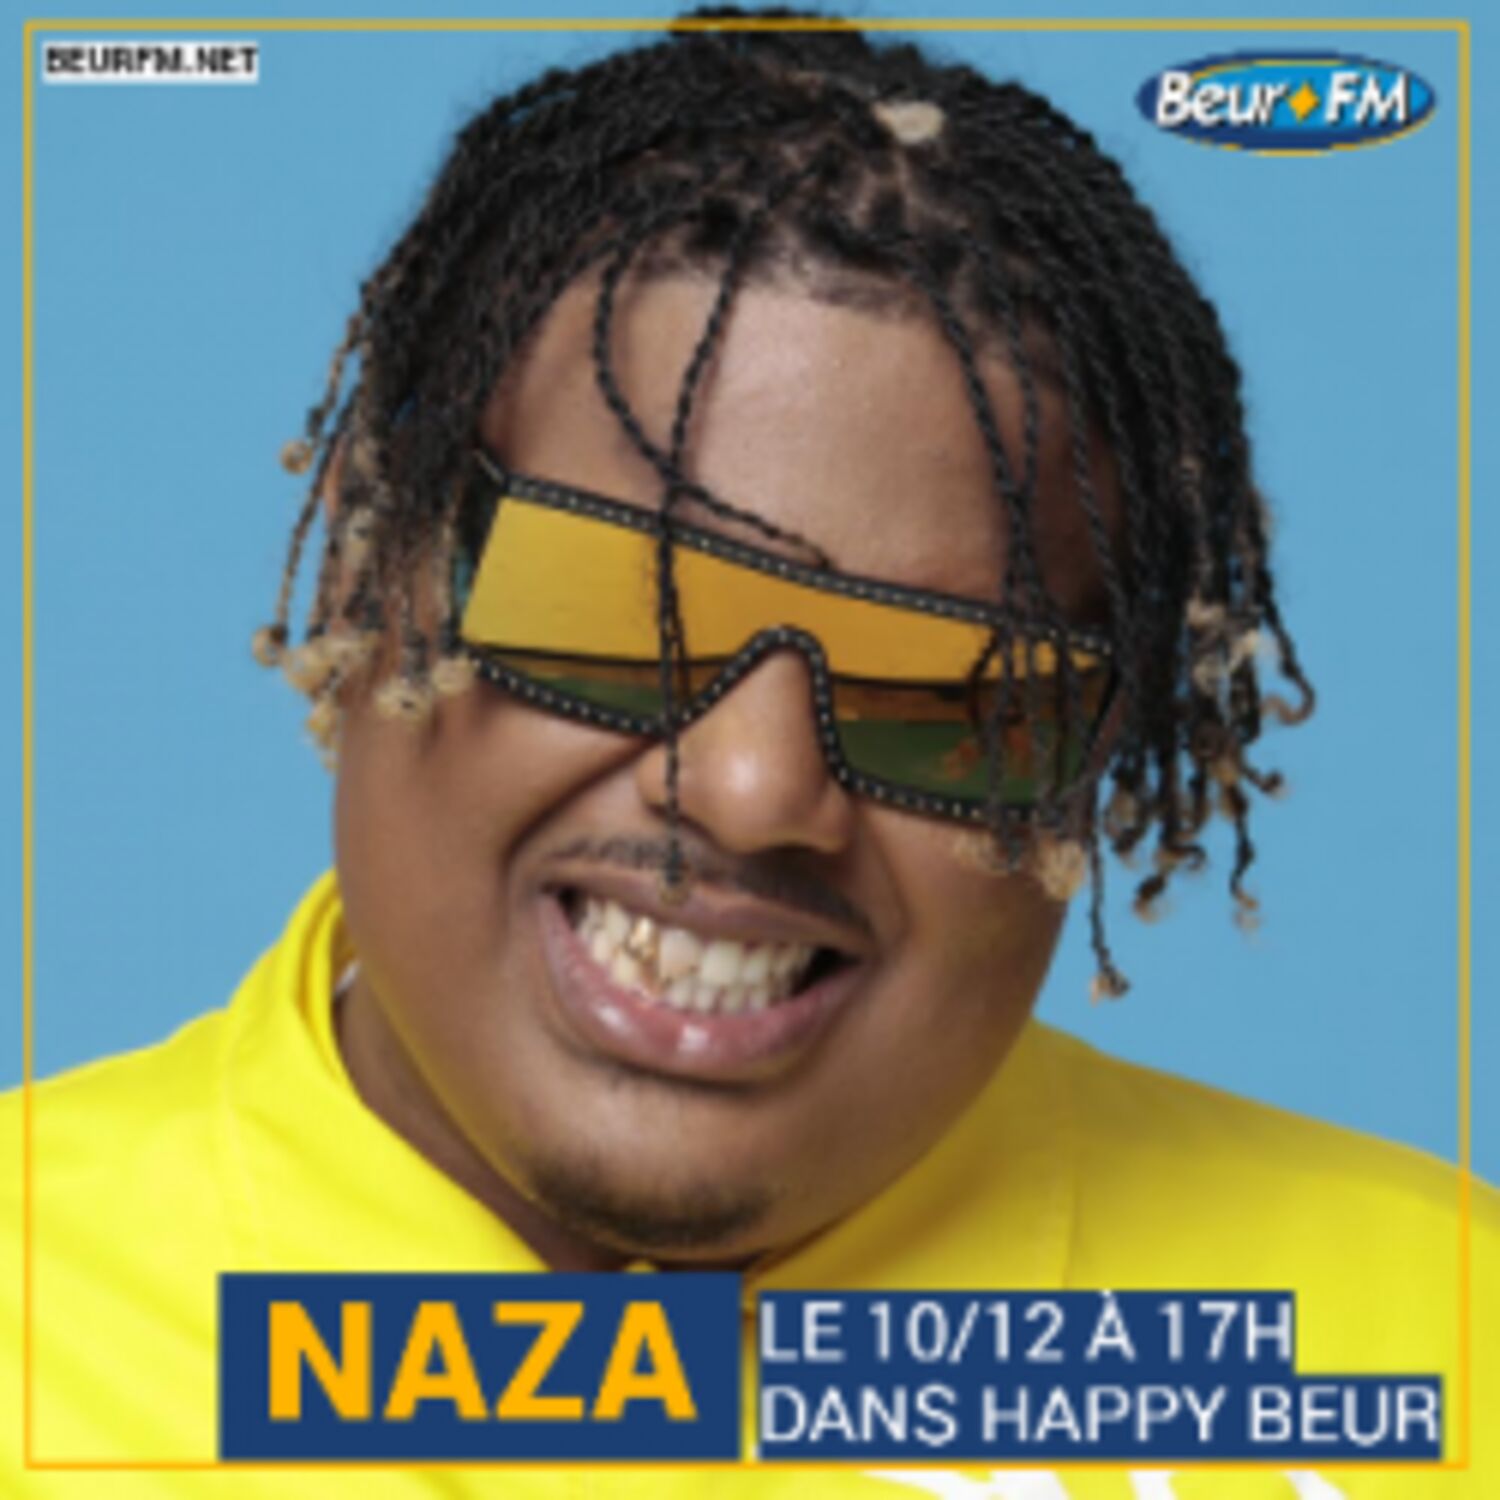 Happy Beur du 10-12-2020 : Naza